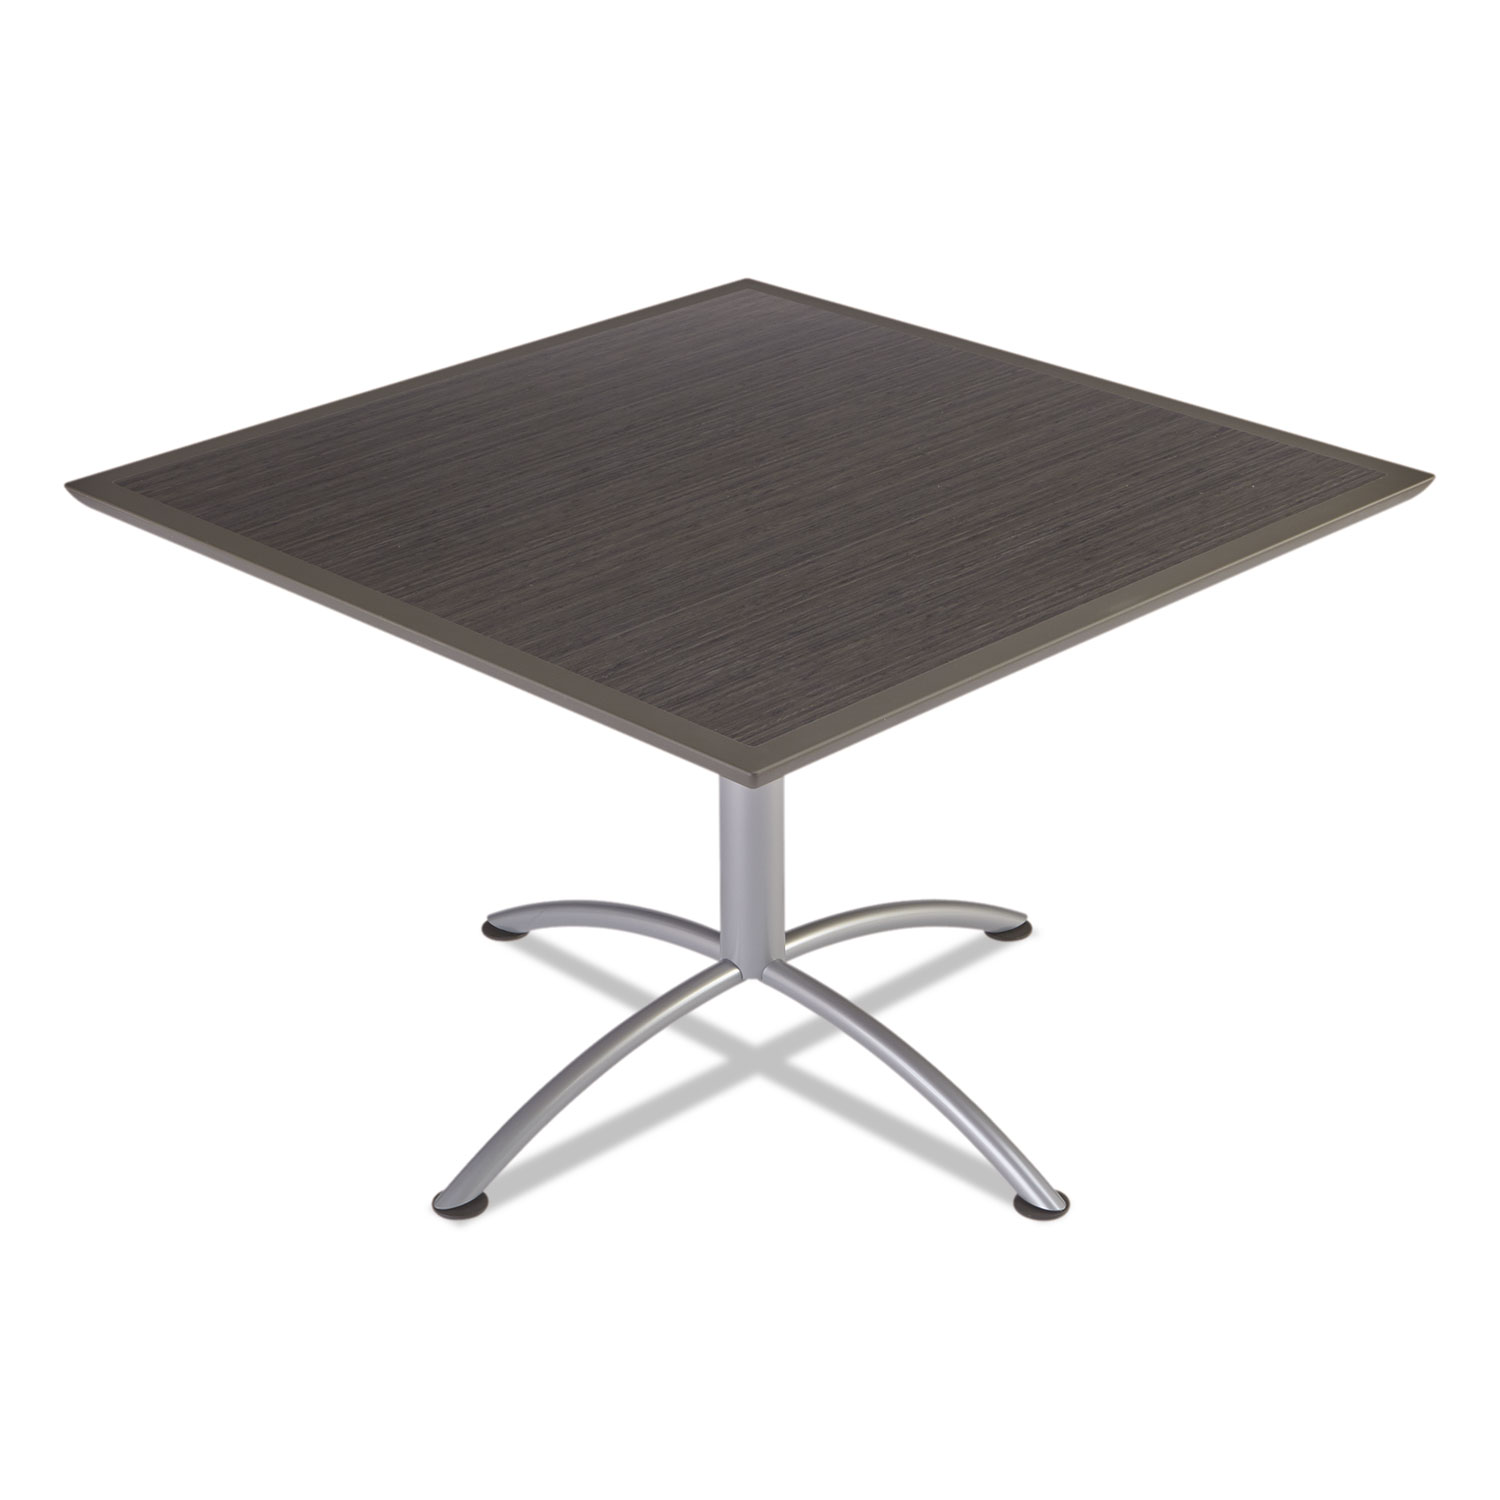 iLand Table, Dura Edge, Square Bistro Style, 42w x 42d x 42h, Gray Walnut/Silver